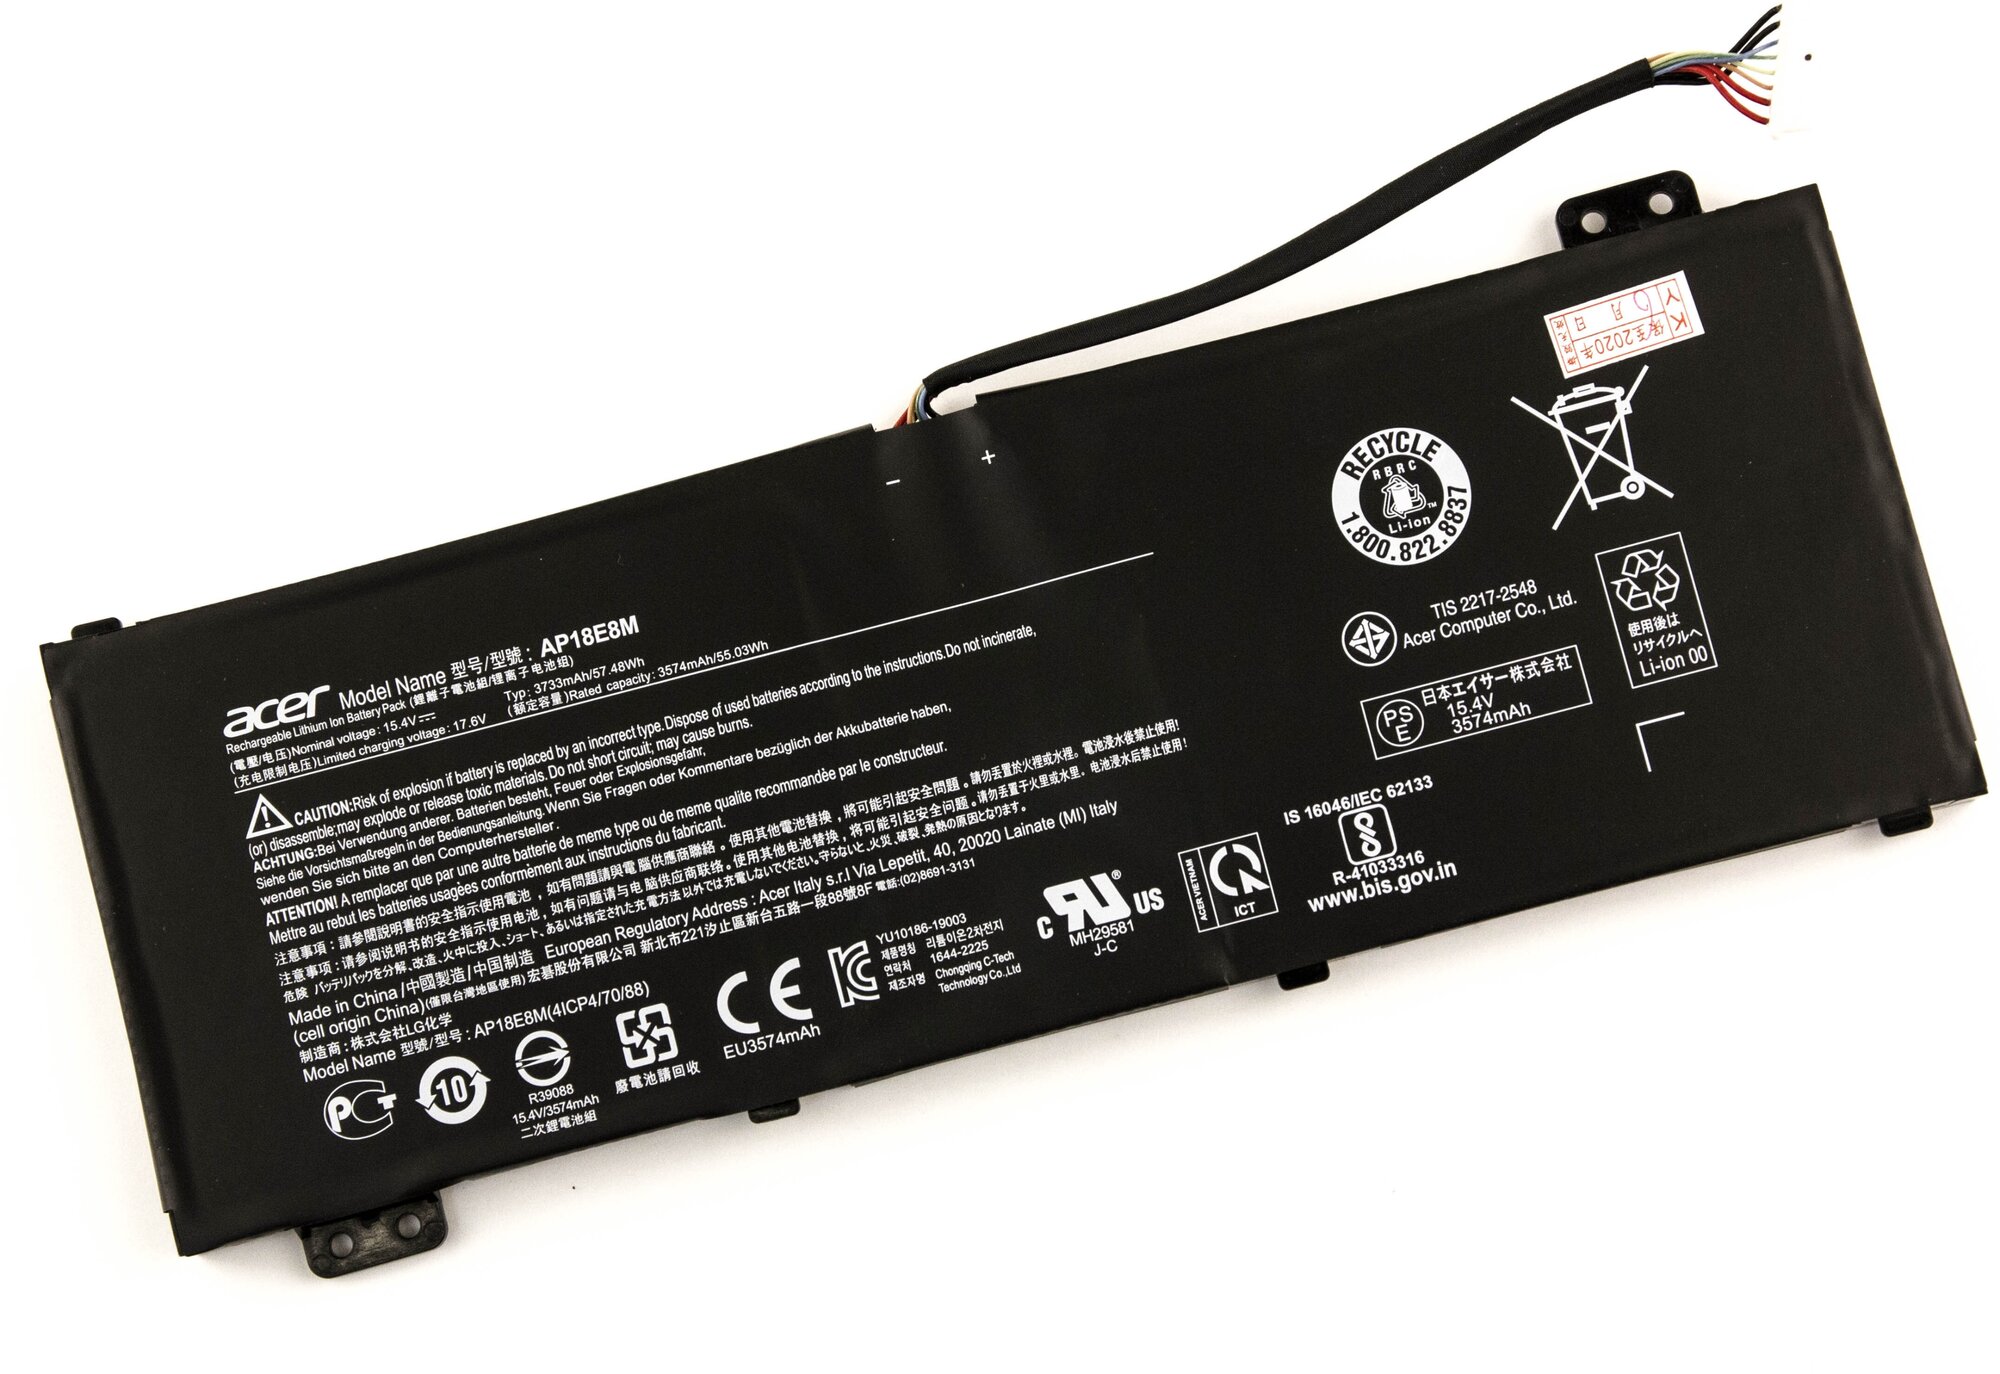 Аккумулятор для Acer AN517 A715-74G ORG (15.4V 3733mAh) p/n: AP18E8M AP18E7M